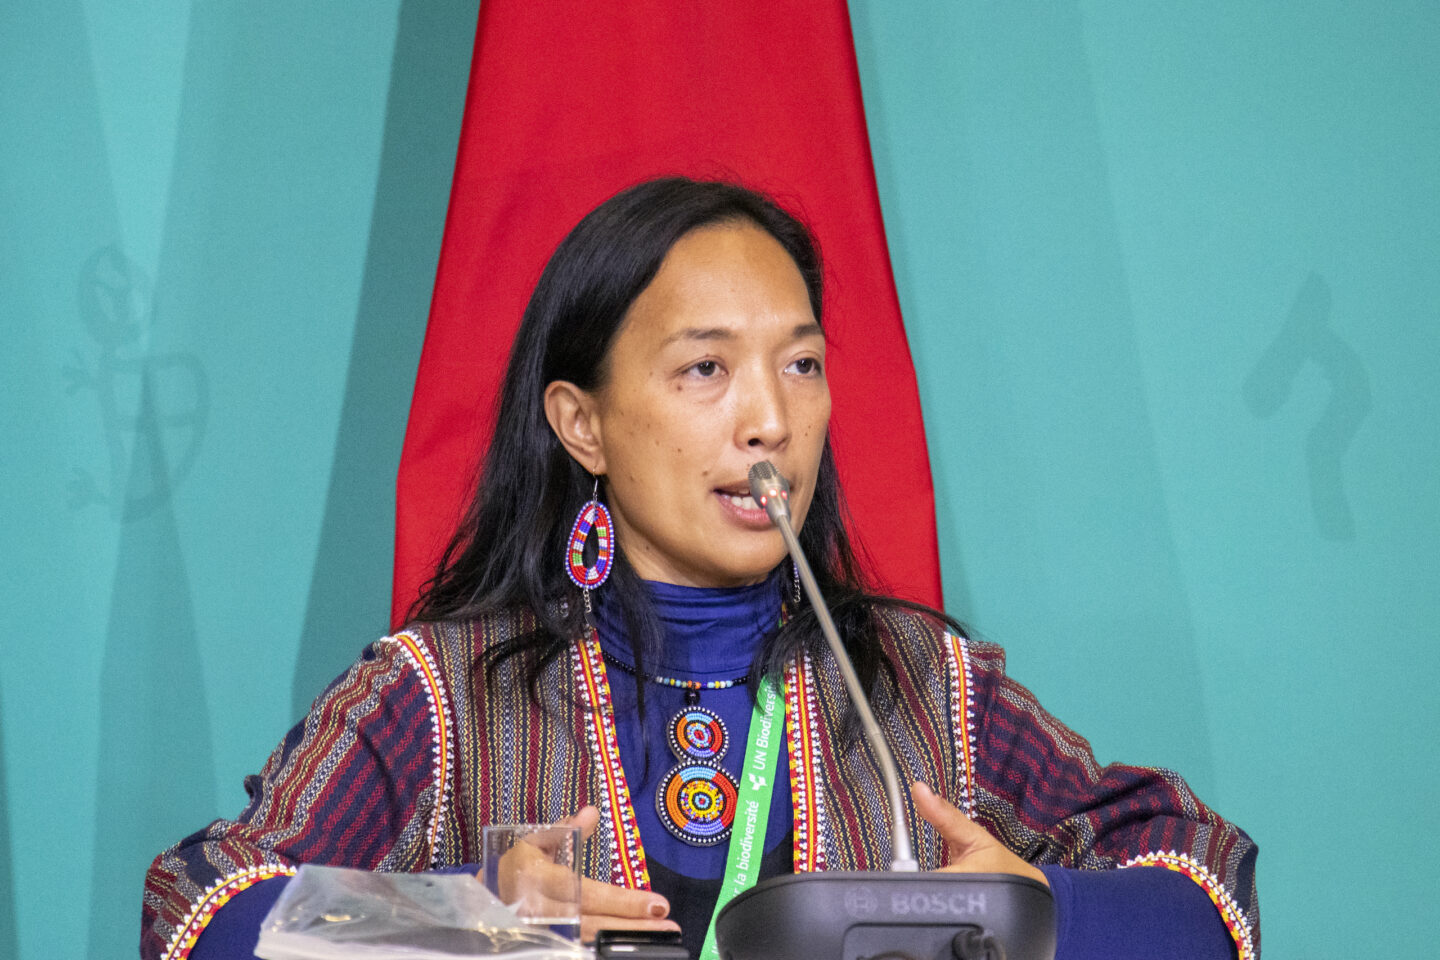 Una mujer con vestimenta tradicional habla frente a un micrófono